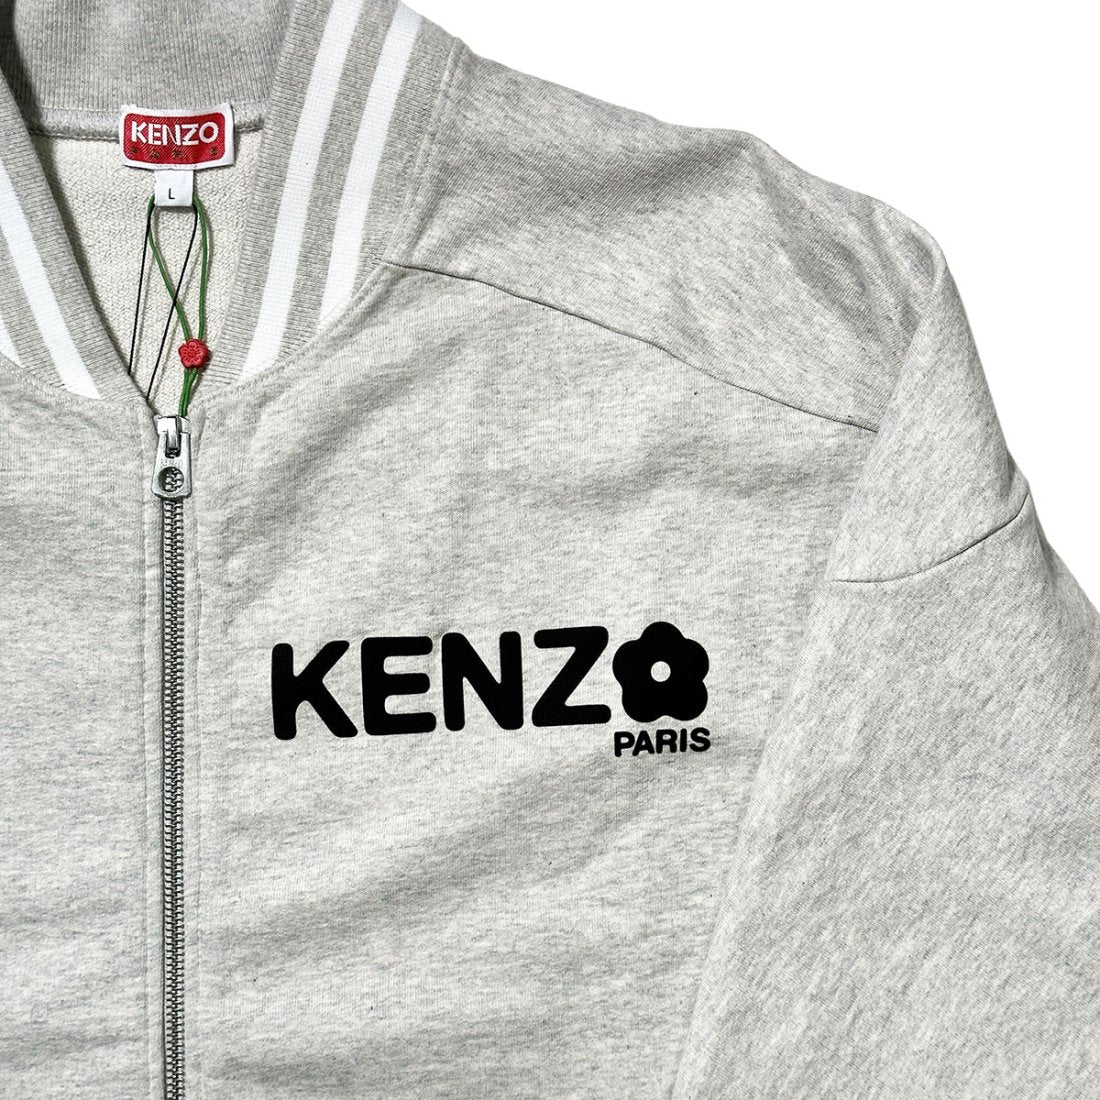 KENZO / ZIP UP SWEATSHIRT